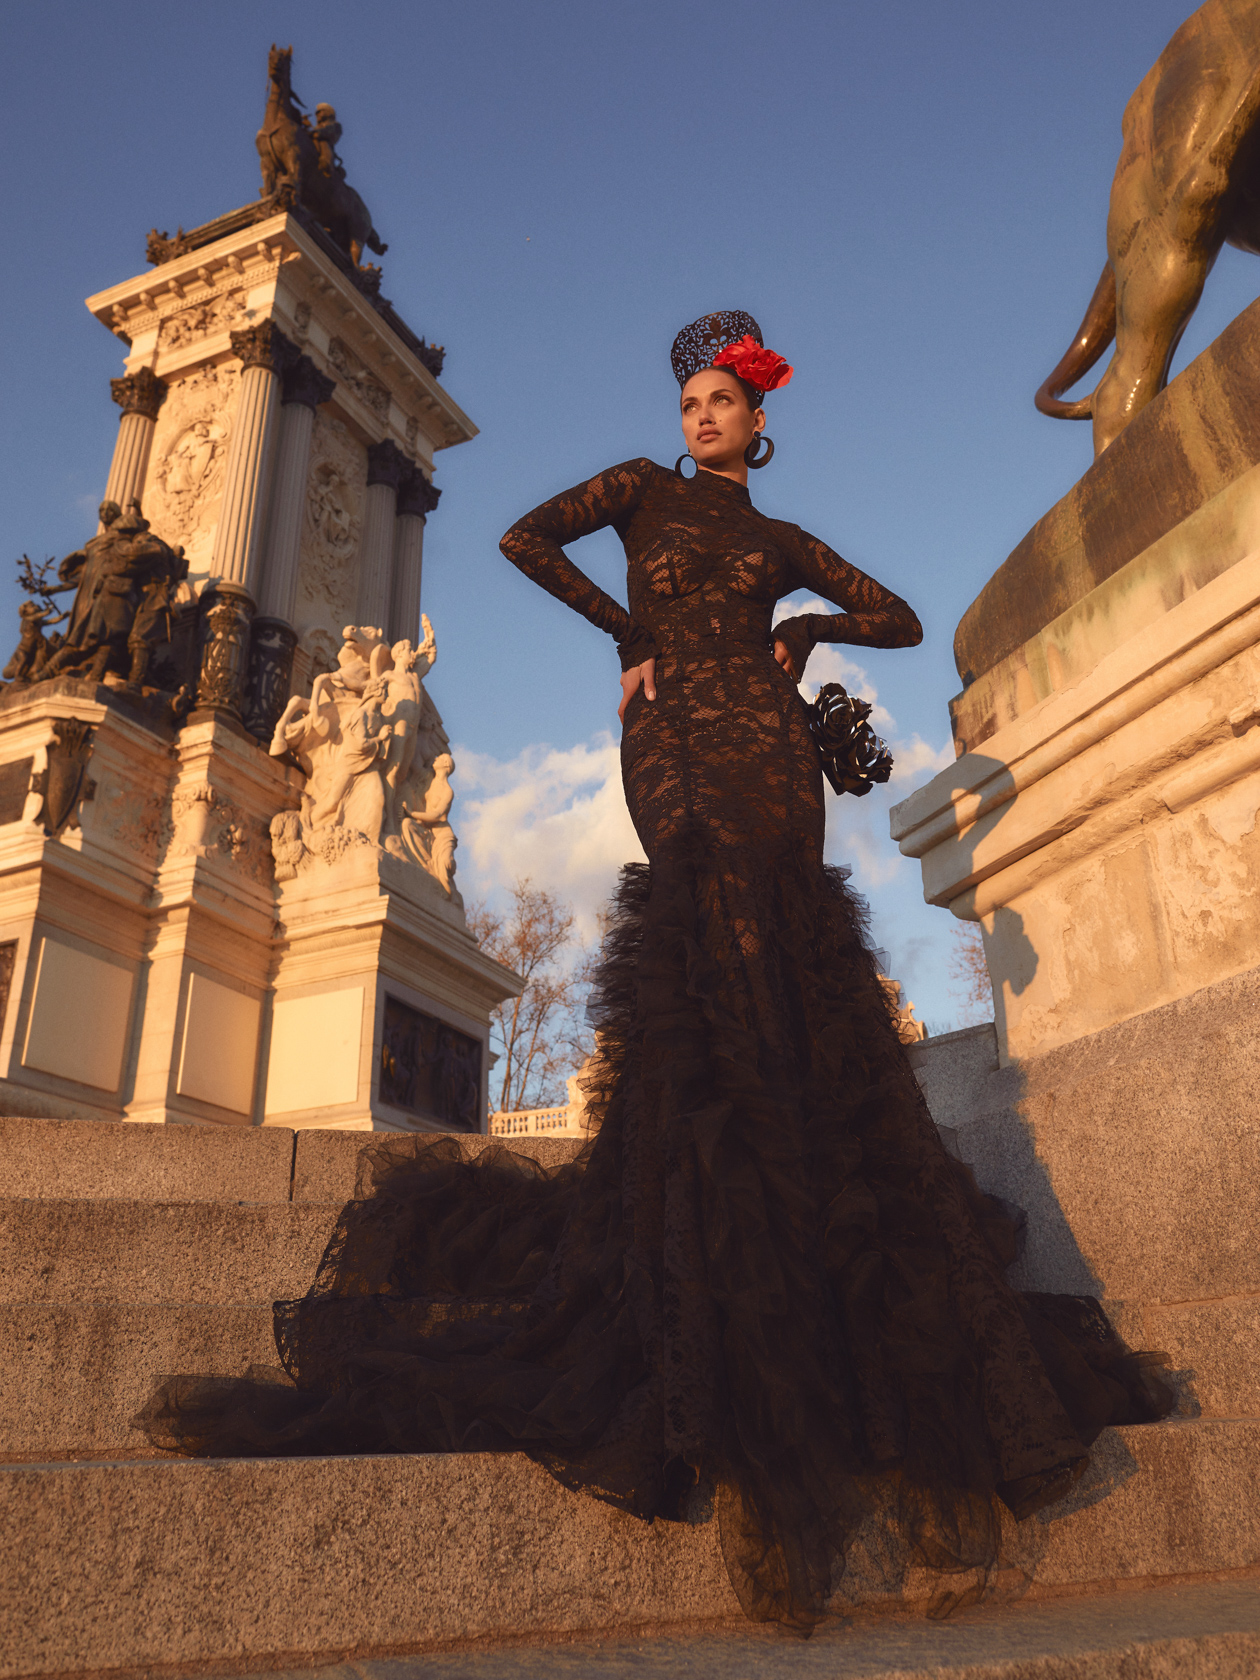 Black Gothic Sparkly 3D Floral Lace Corset Wedding Dress